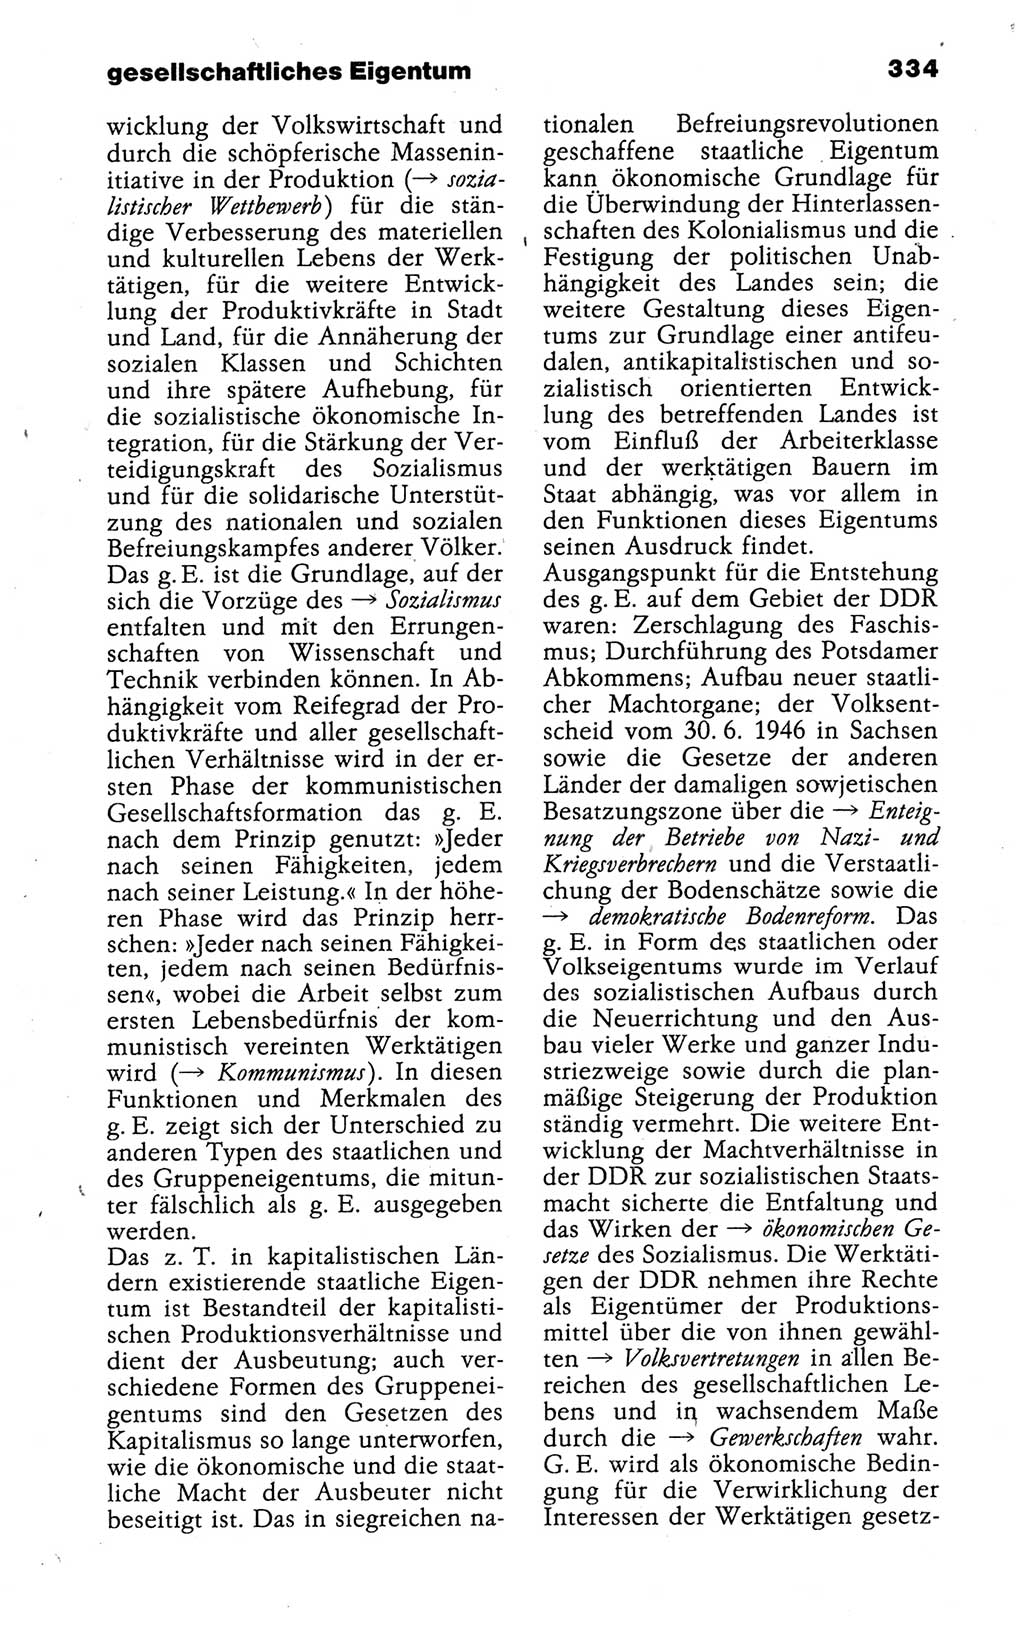 Kleines politisches Wörterbuch [Deutsche Demokratische Republik (DDR)] 1988, Seite 334 (Kl. pol. Wb. DDR 1988, S. 334)